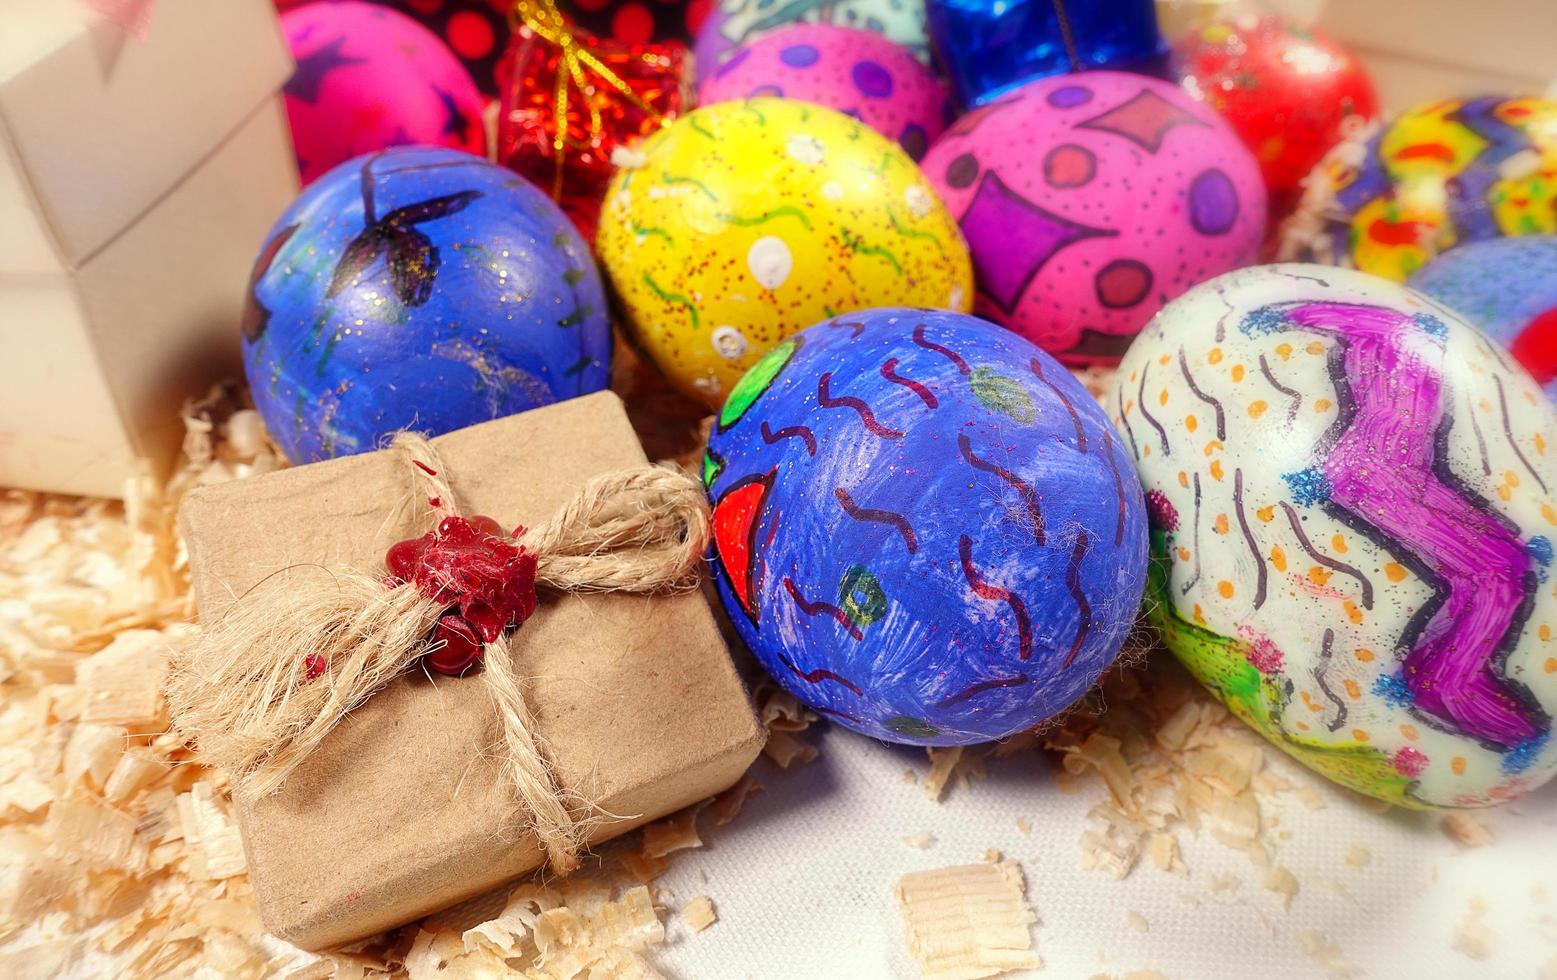 coloridos huevos de pascua pascual y caja de regalo foto